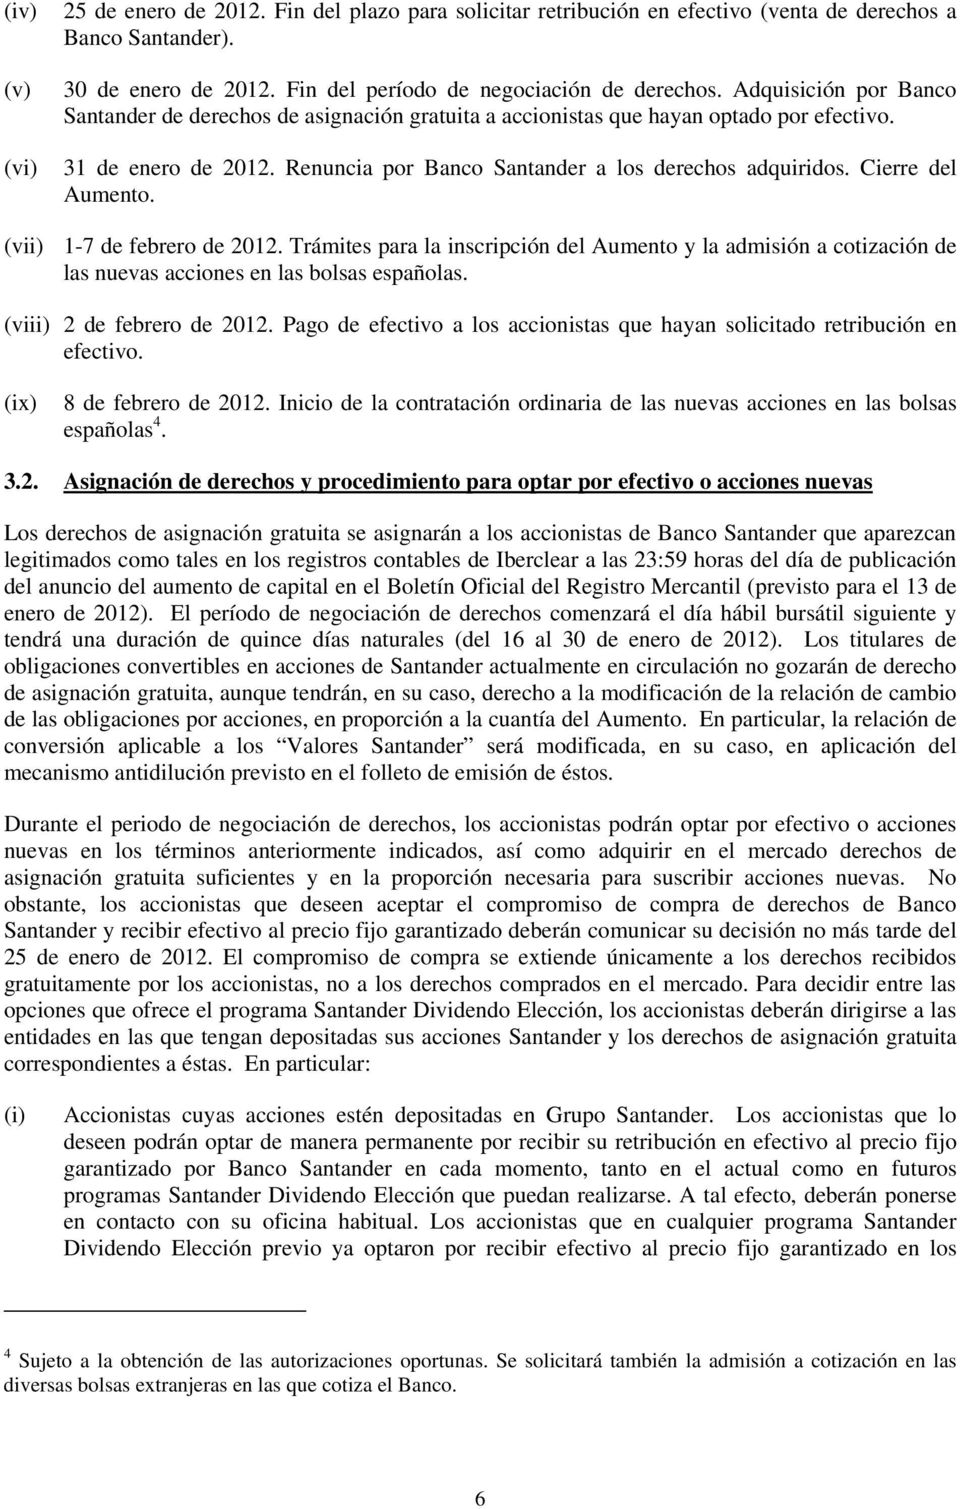 Cierre del Aumento. (vii) 1-7 de febrero de 2012. Trámites para la inscripción del Aumento y la admisión a cotización de las nuevas acciones en las bolsas españolas. (viii) 2 de febrero de 2012.